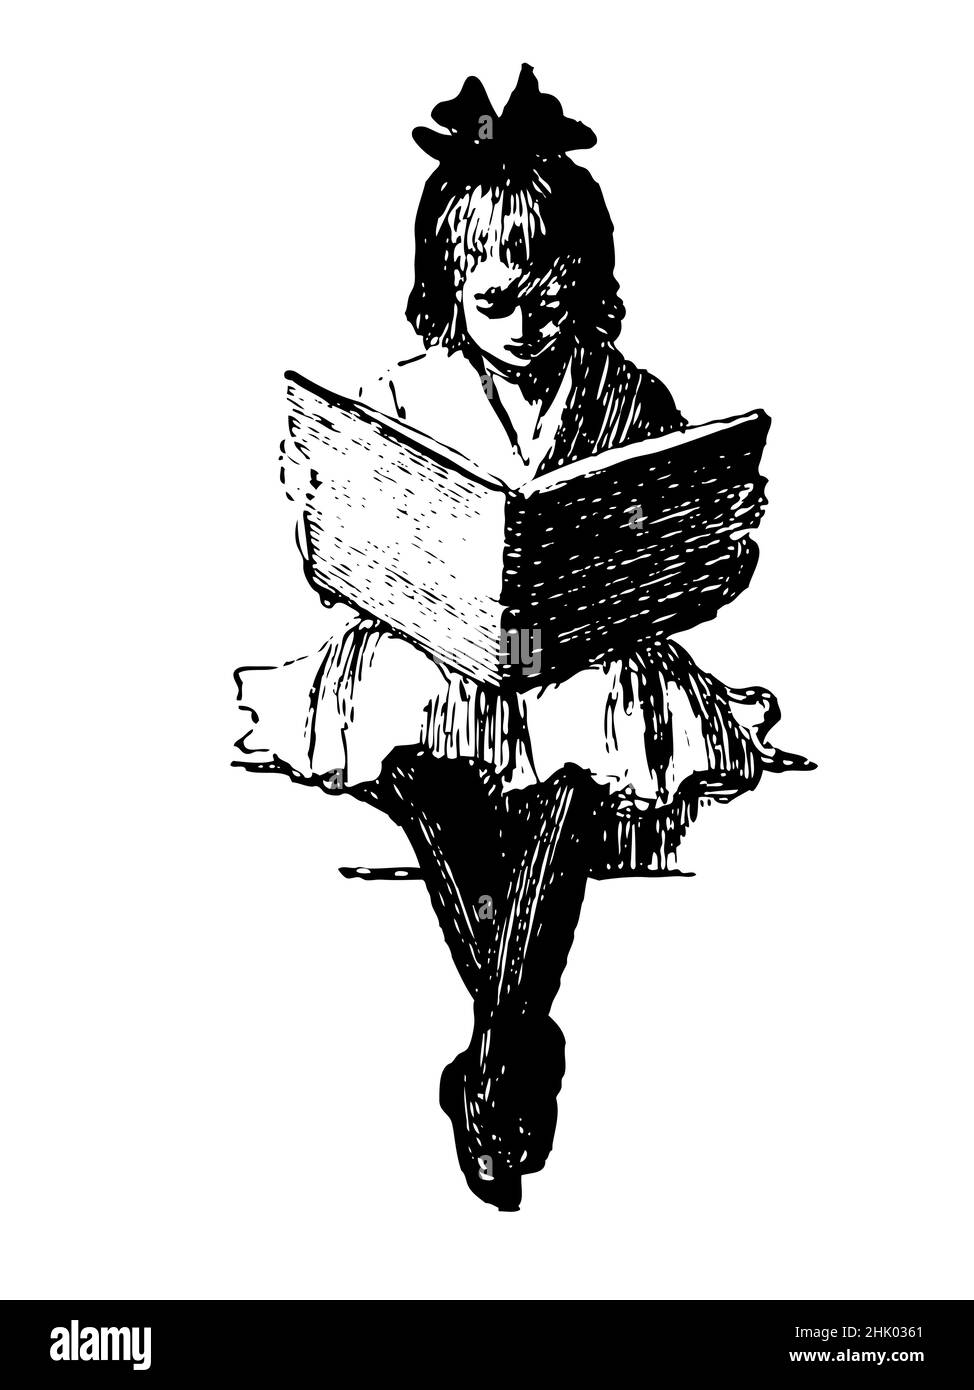 Vintage-Stil Illustration, junge Mädchen sitzen Lesung ein großes Buch. Schwarz-weiß Zeichnung Clip Art. Stock Vektor